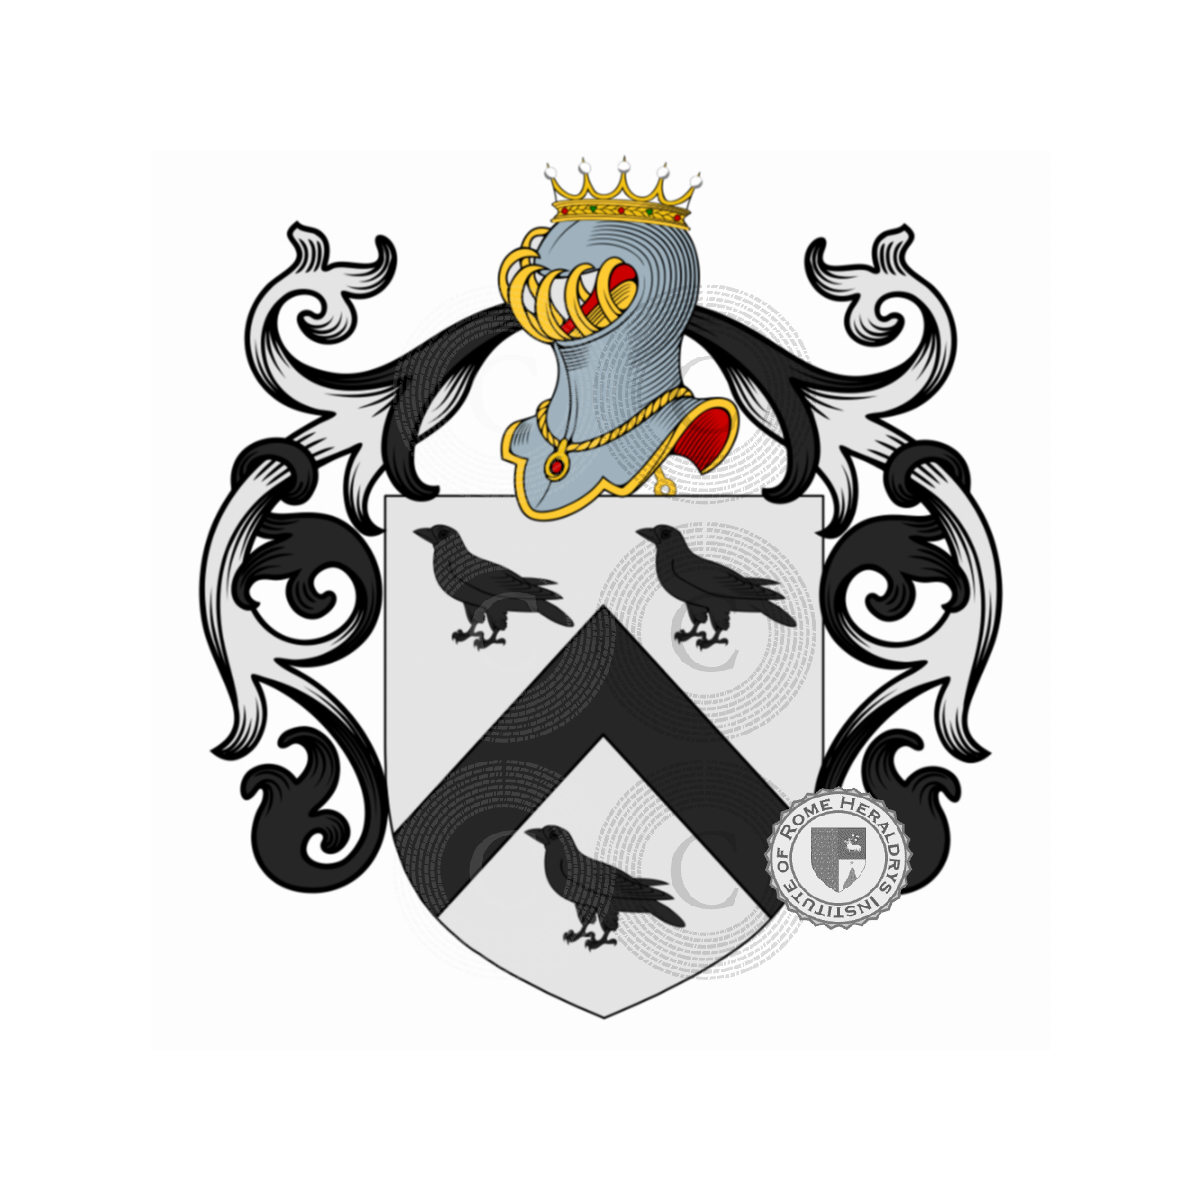 Wappen der Familiede Floyd de Tréguibé, Floyd de Tréguibé,Floyd de Treguibi,Fludd